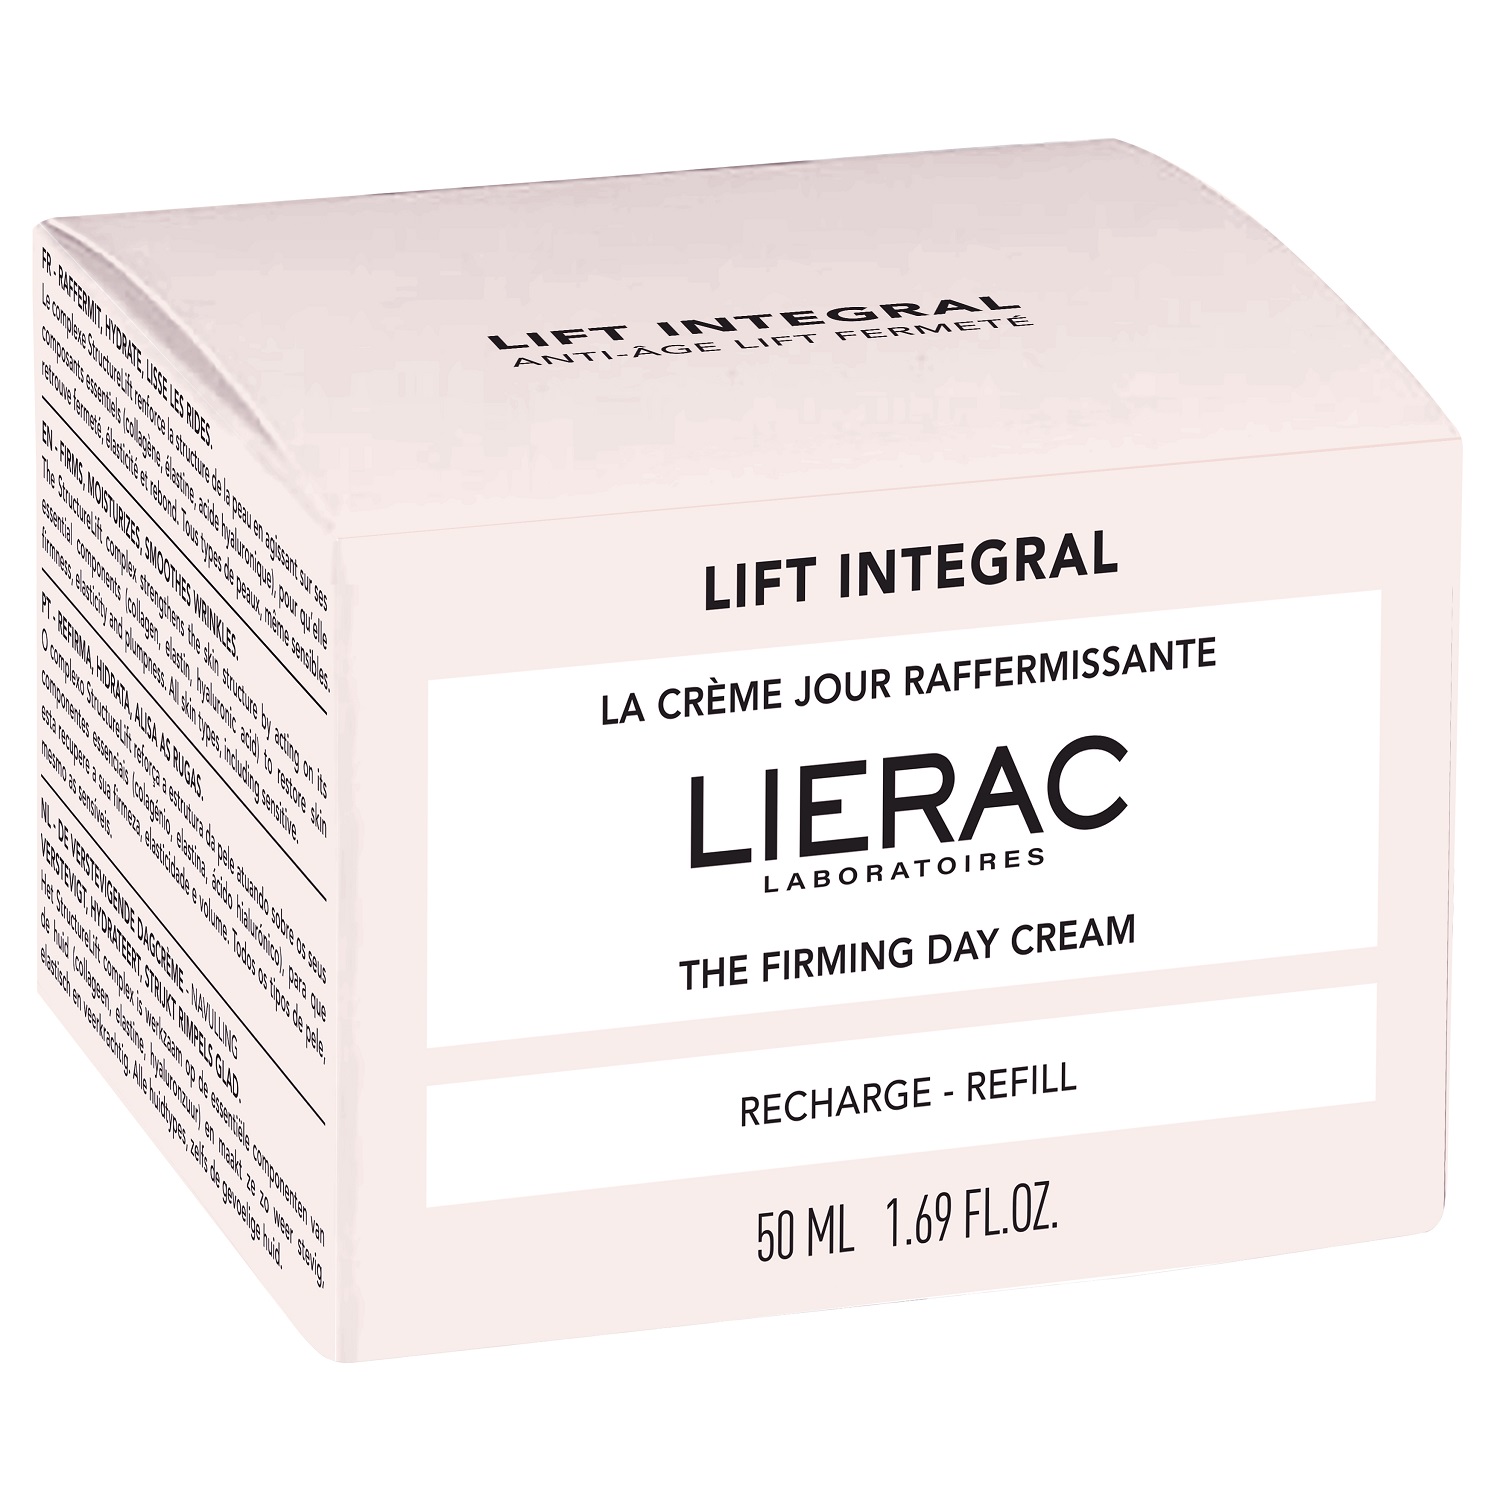 Купить Lierac Укрепляющий дневной крем-лифтинг для лица, сменный блок 50 мл (Lierac, Lift Integral), Франция